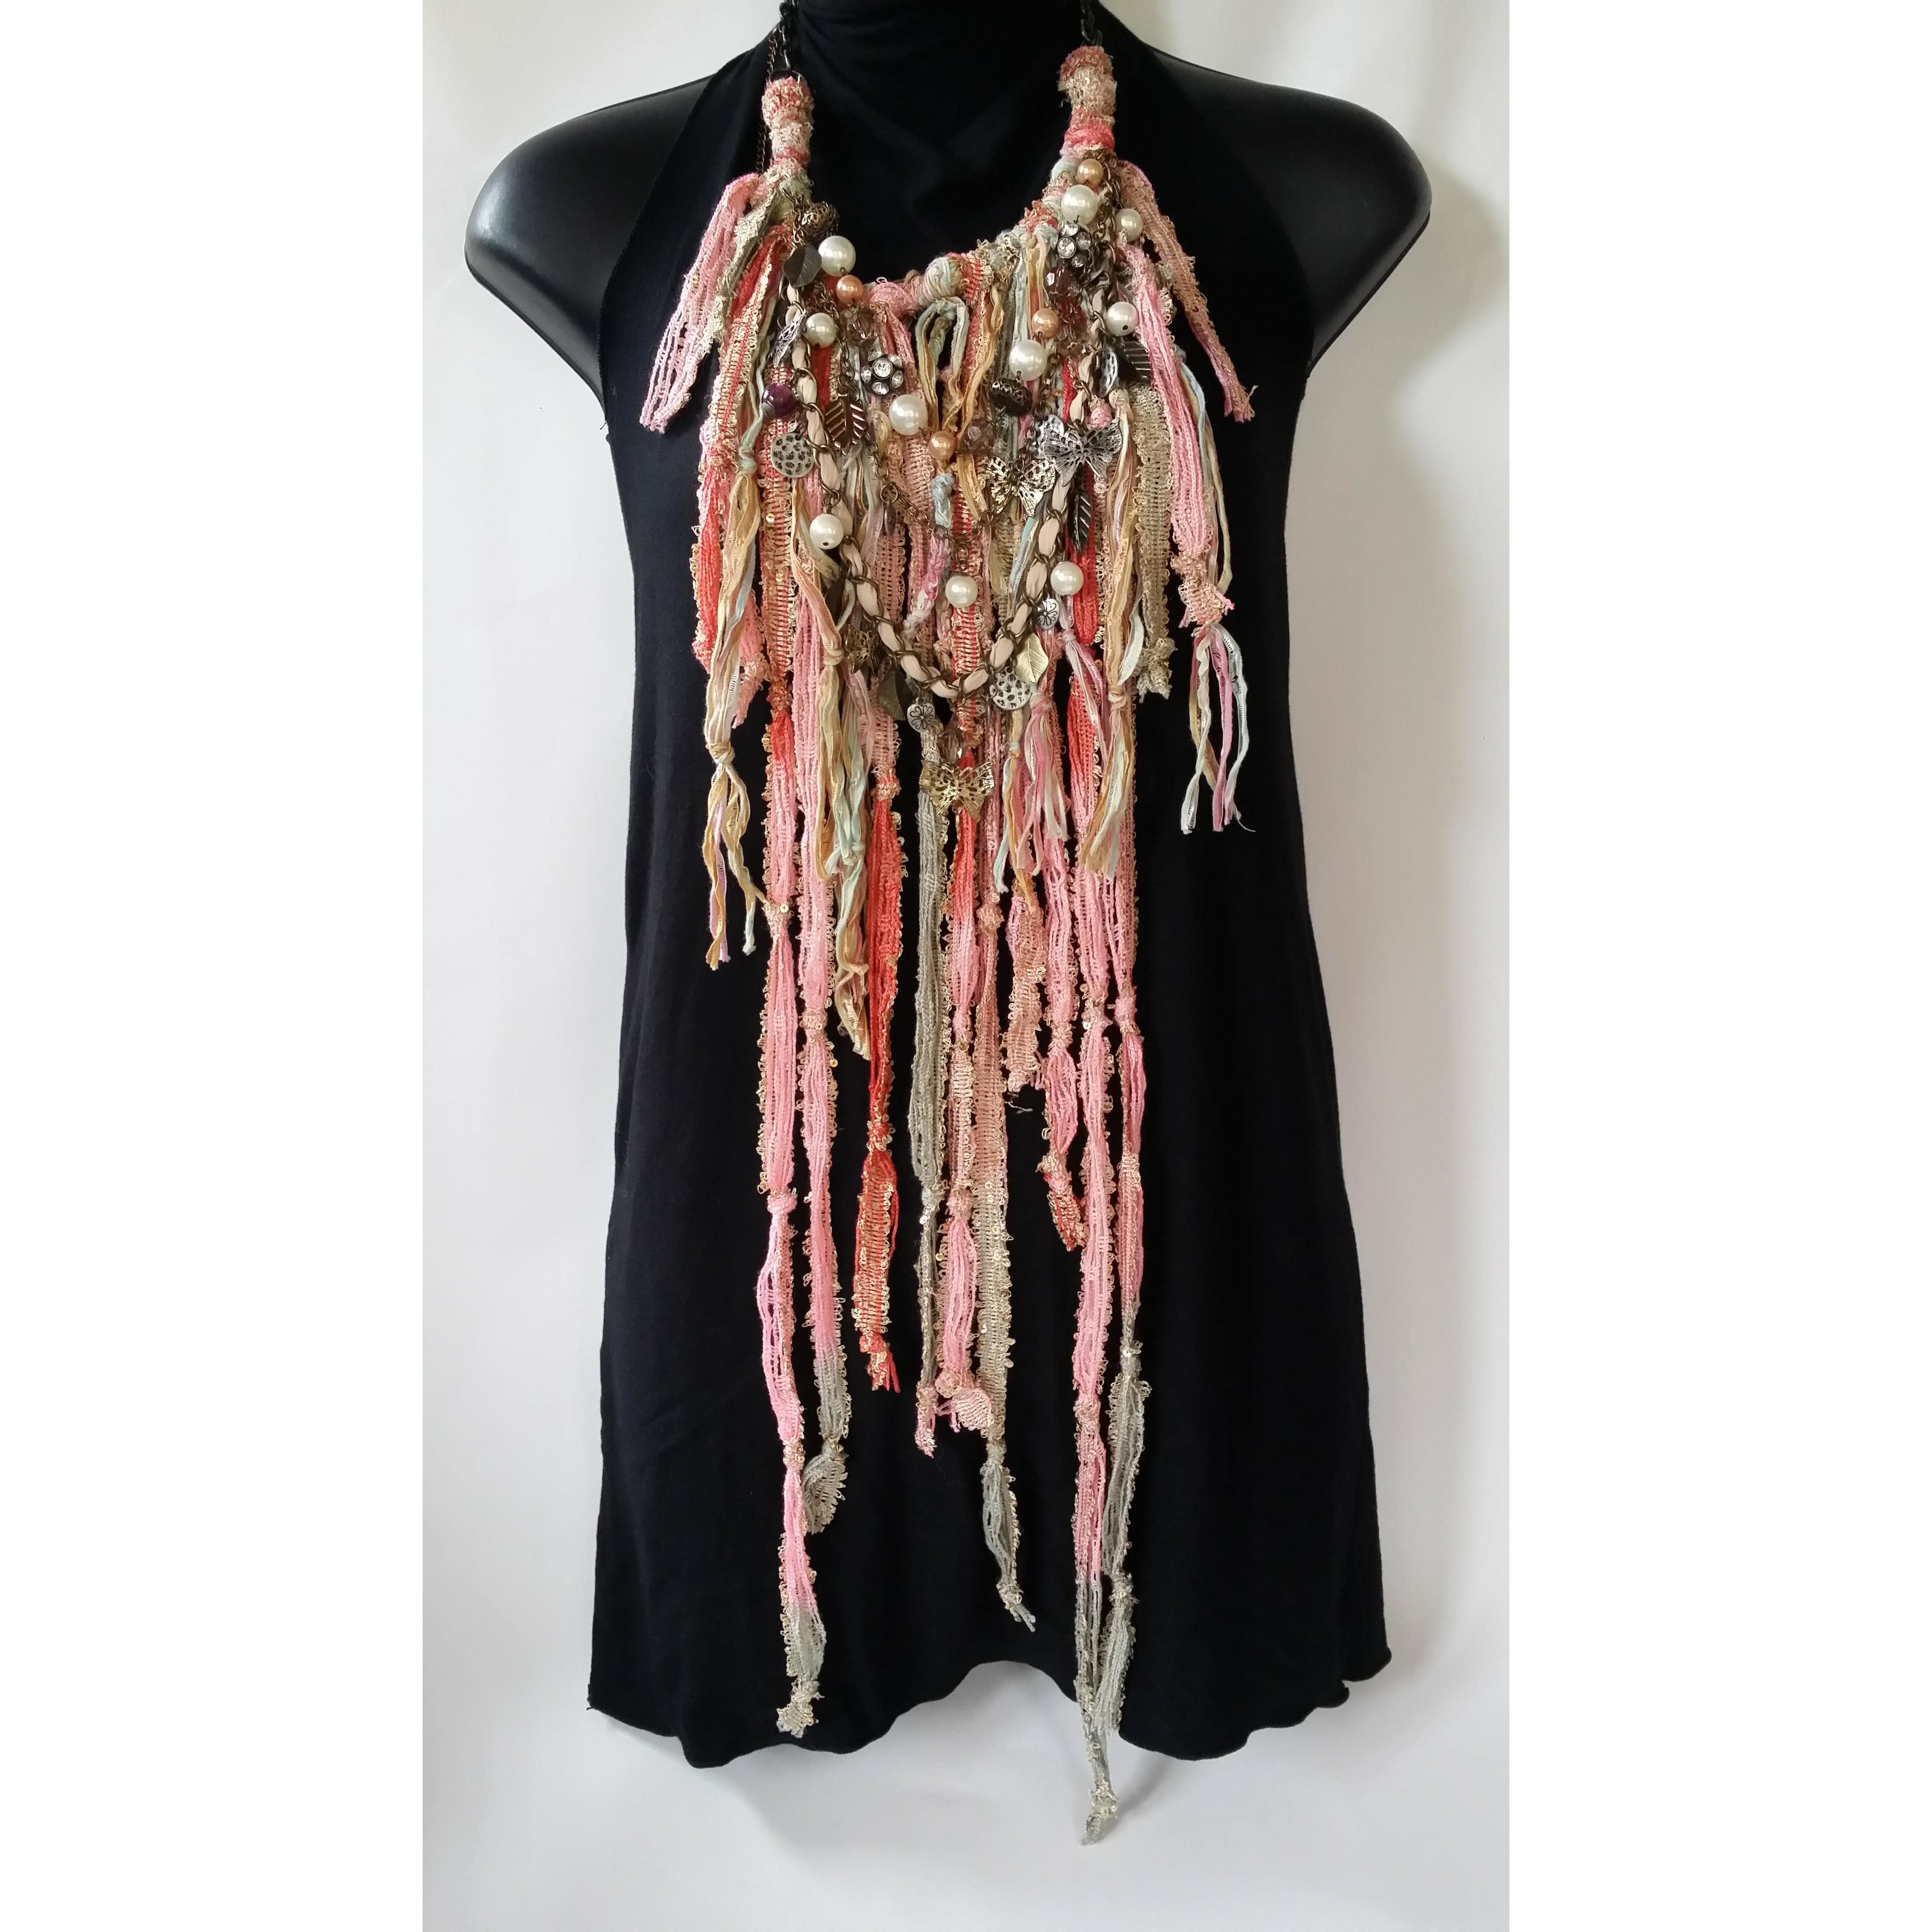 Festival Neckwear- Dusty pink / Beige- muti textile media - metal jewellery accents